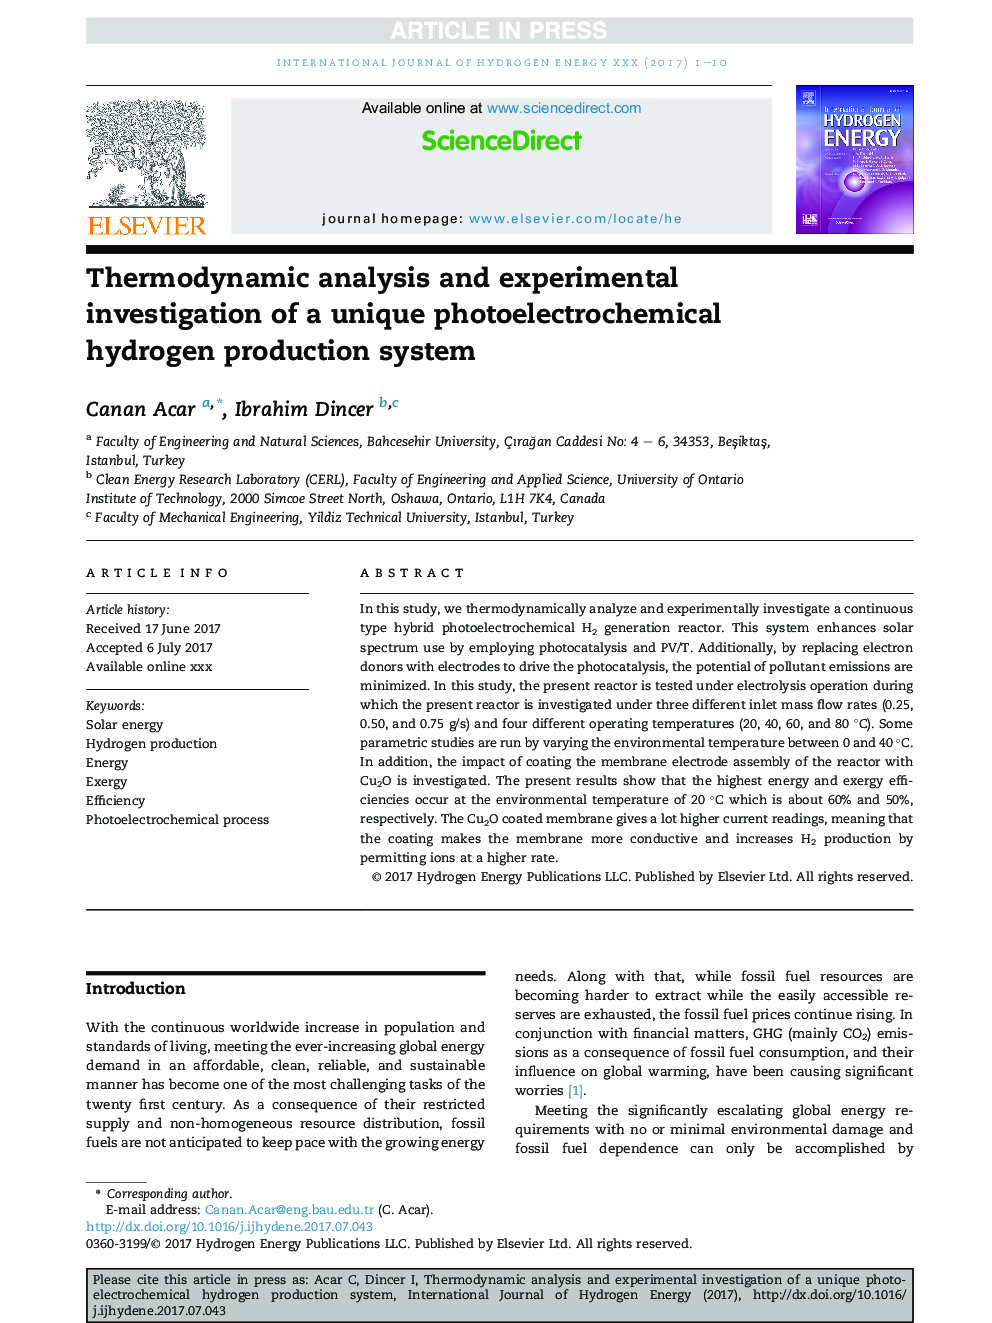 تجزیه و تحلیل ترمودینامیکی و بررسی تجربی سیستم تولید هیدروژن الکترومغناطیسی منحصر به فرد 